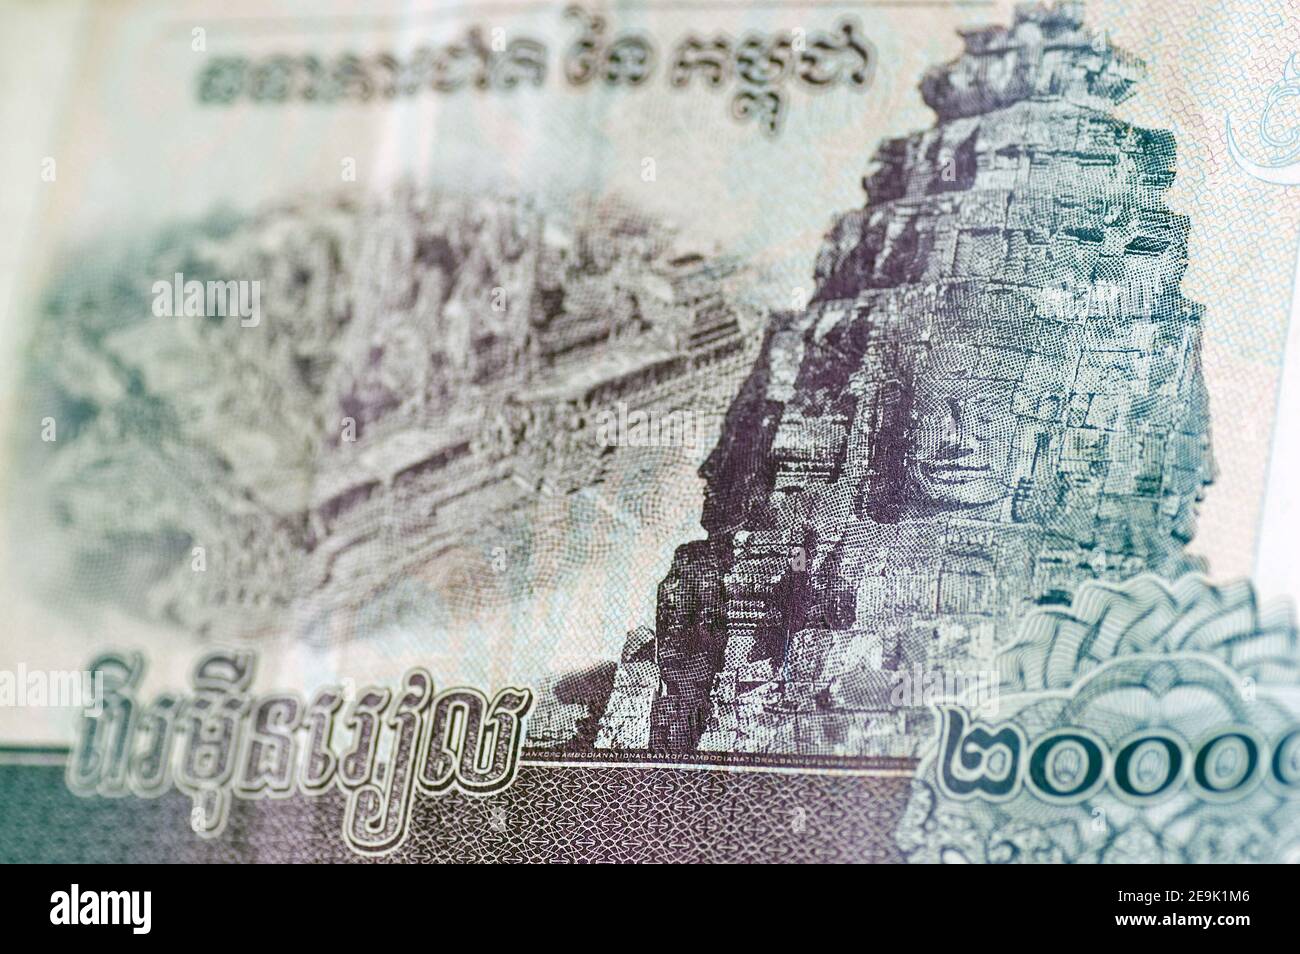 Vista ad angolo di una banconota cambogiana per 20,000 Riel che mostra parte del Tempio di Bayon con vista aerea del punto di riferimento sulla sinistra. Banconota usata, vista Foto Stock